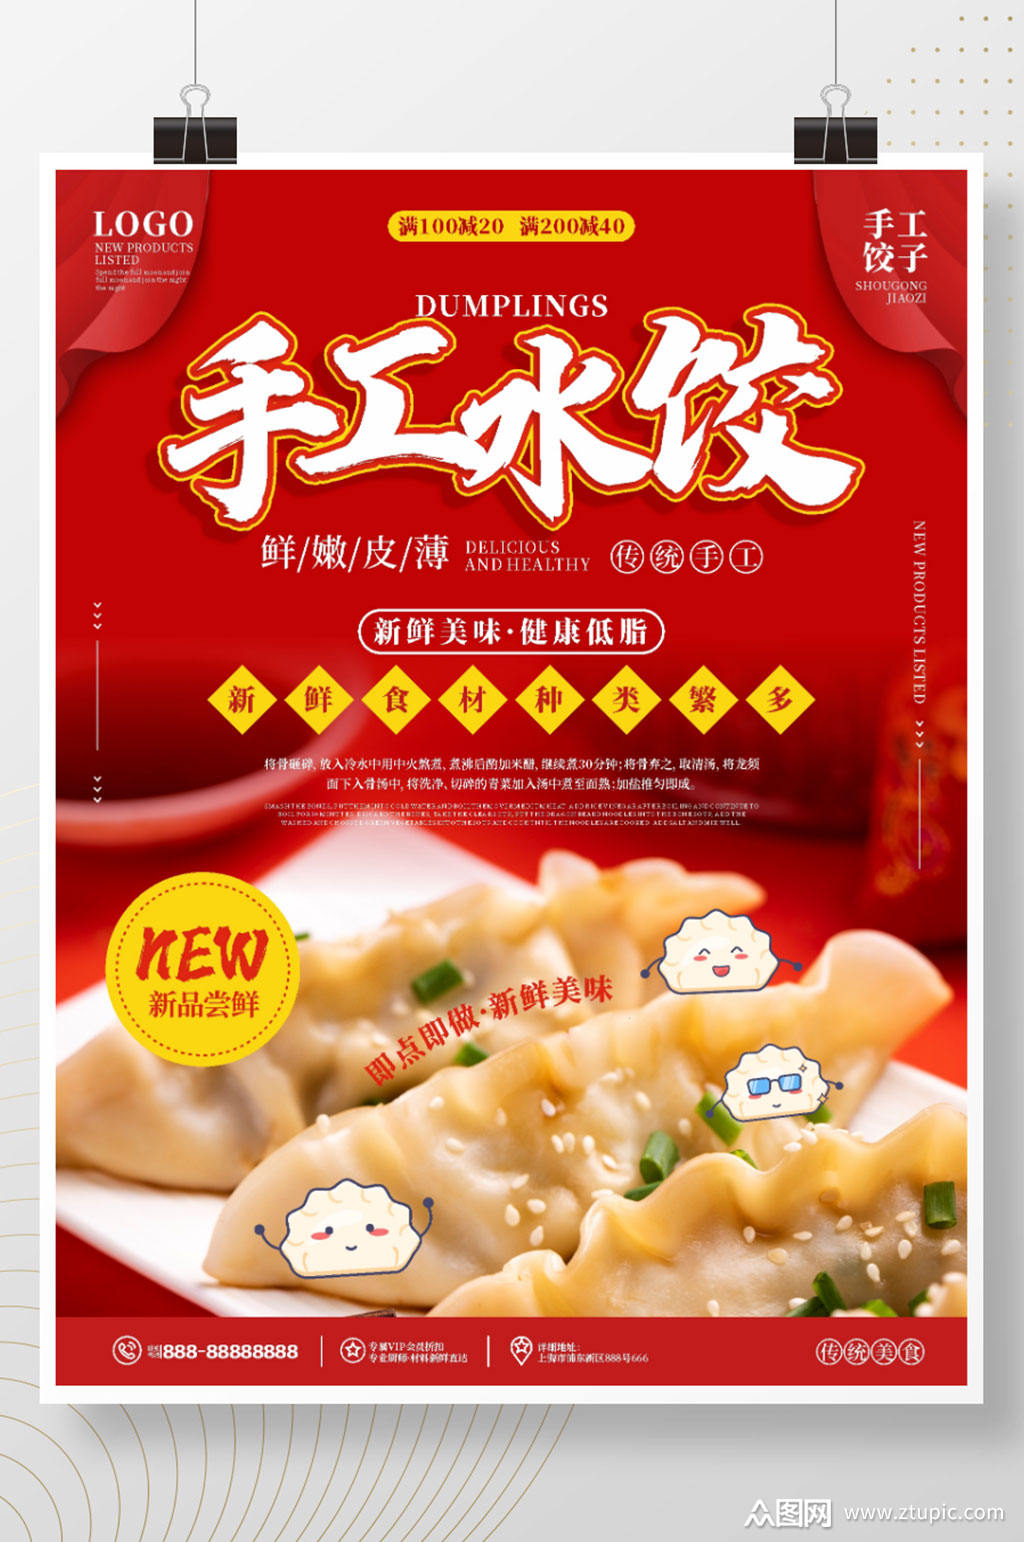 饺子馄饨宣传海报素材免费下载,本作品是由阿荟荟上传的原创平面广告